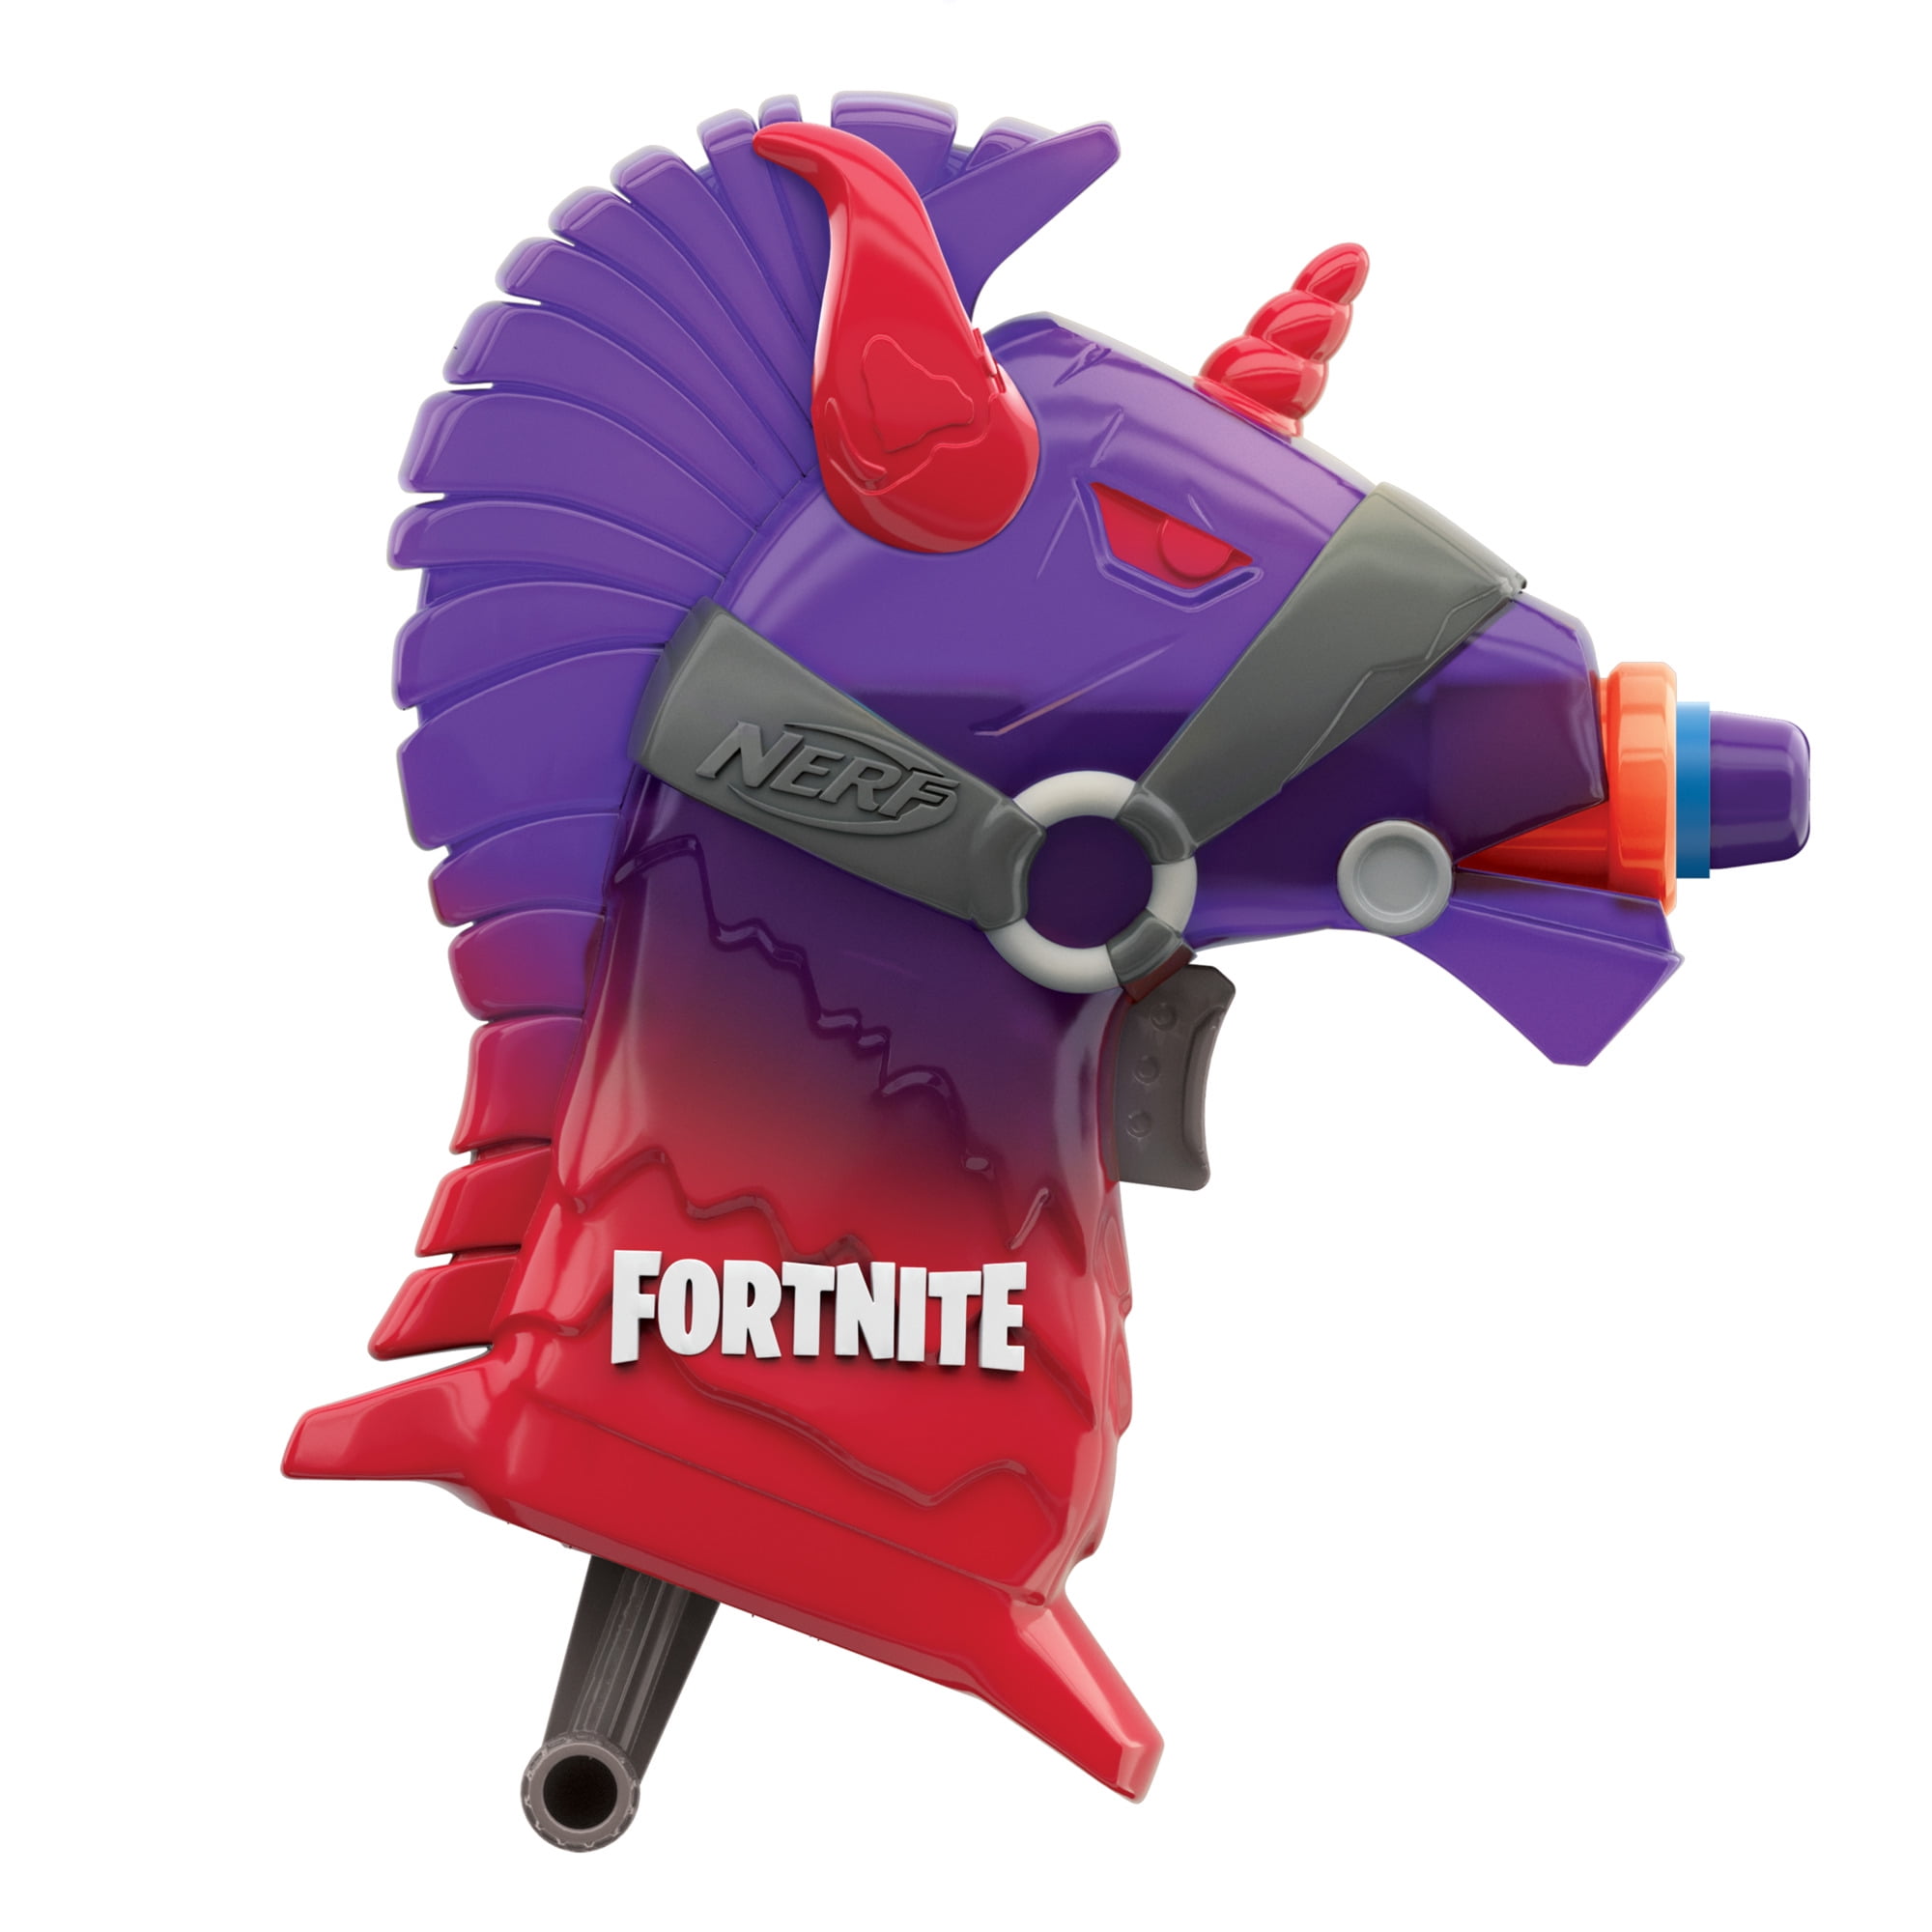 Nerf Fortnite Llama Dart-Firing Blaster Toy for sale online 